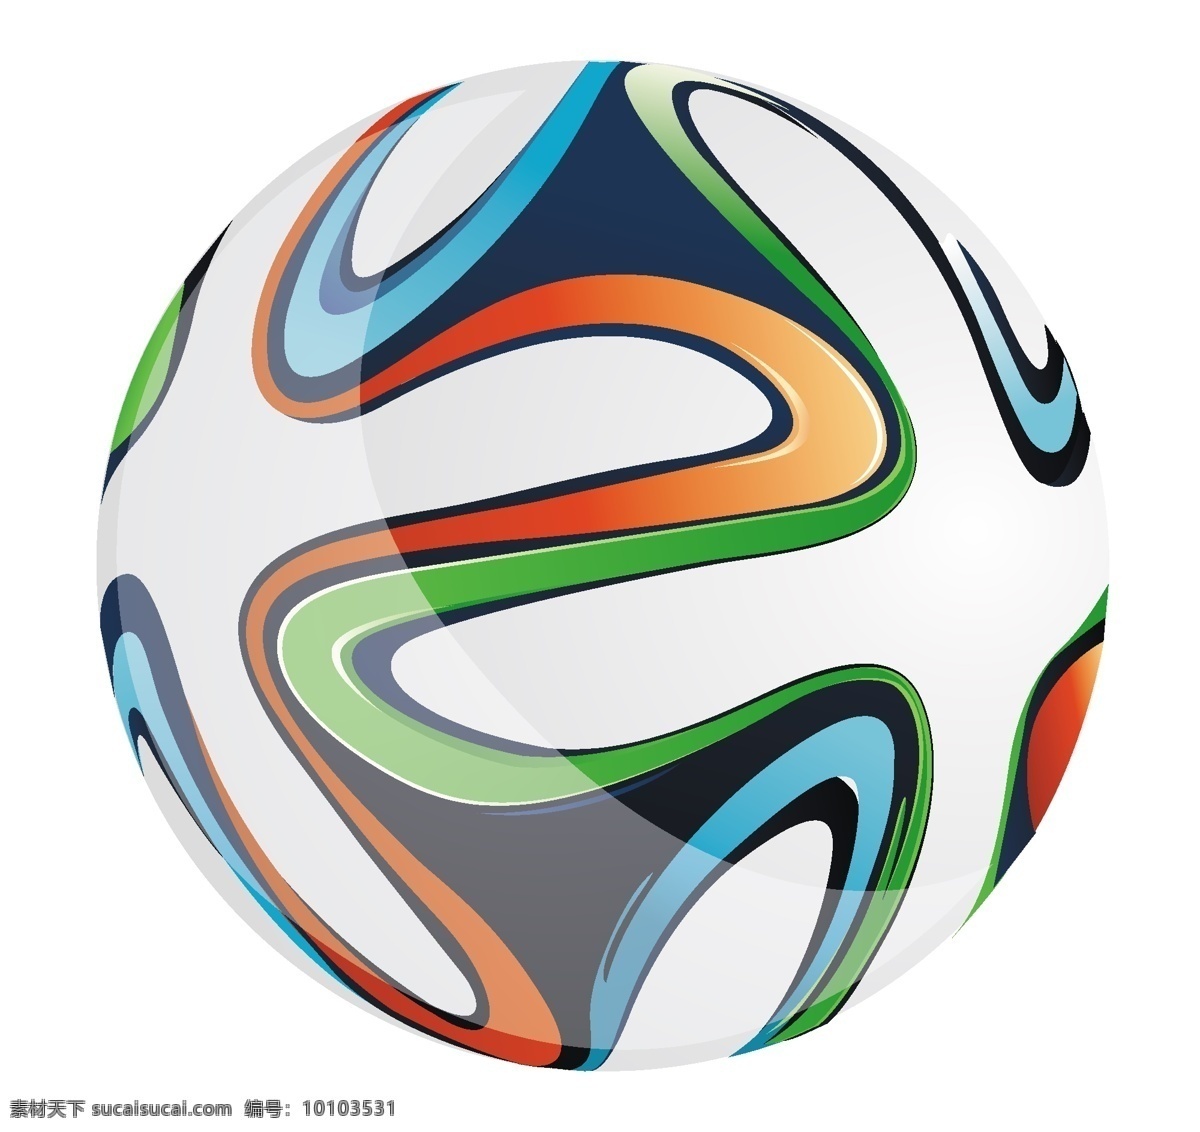 2014 巴西 世界杯 足球 adidas cup world brasil ball 矢量图 日常生活